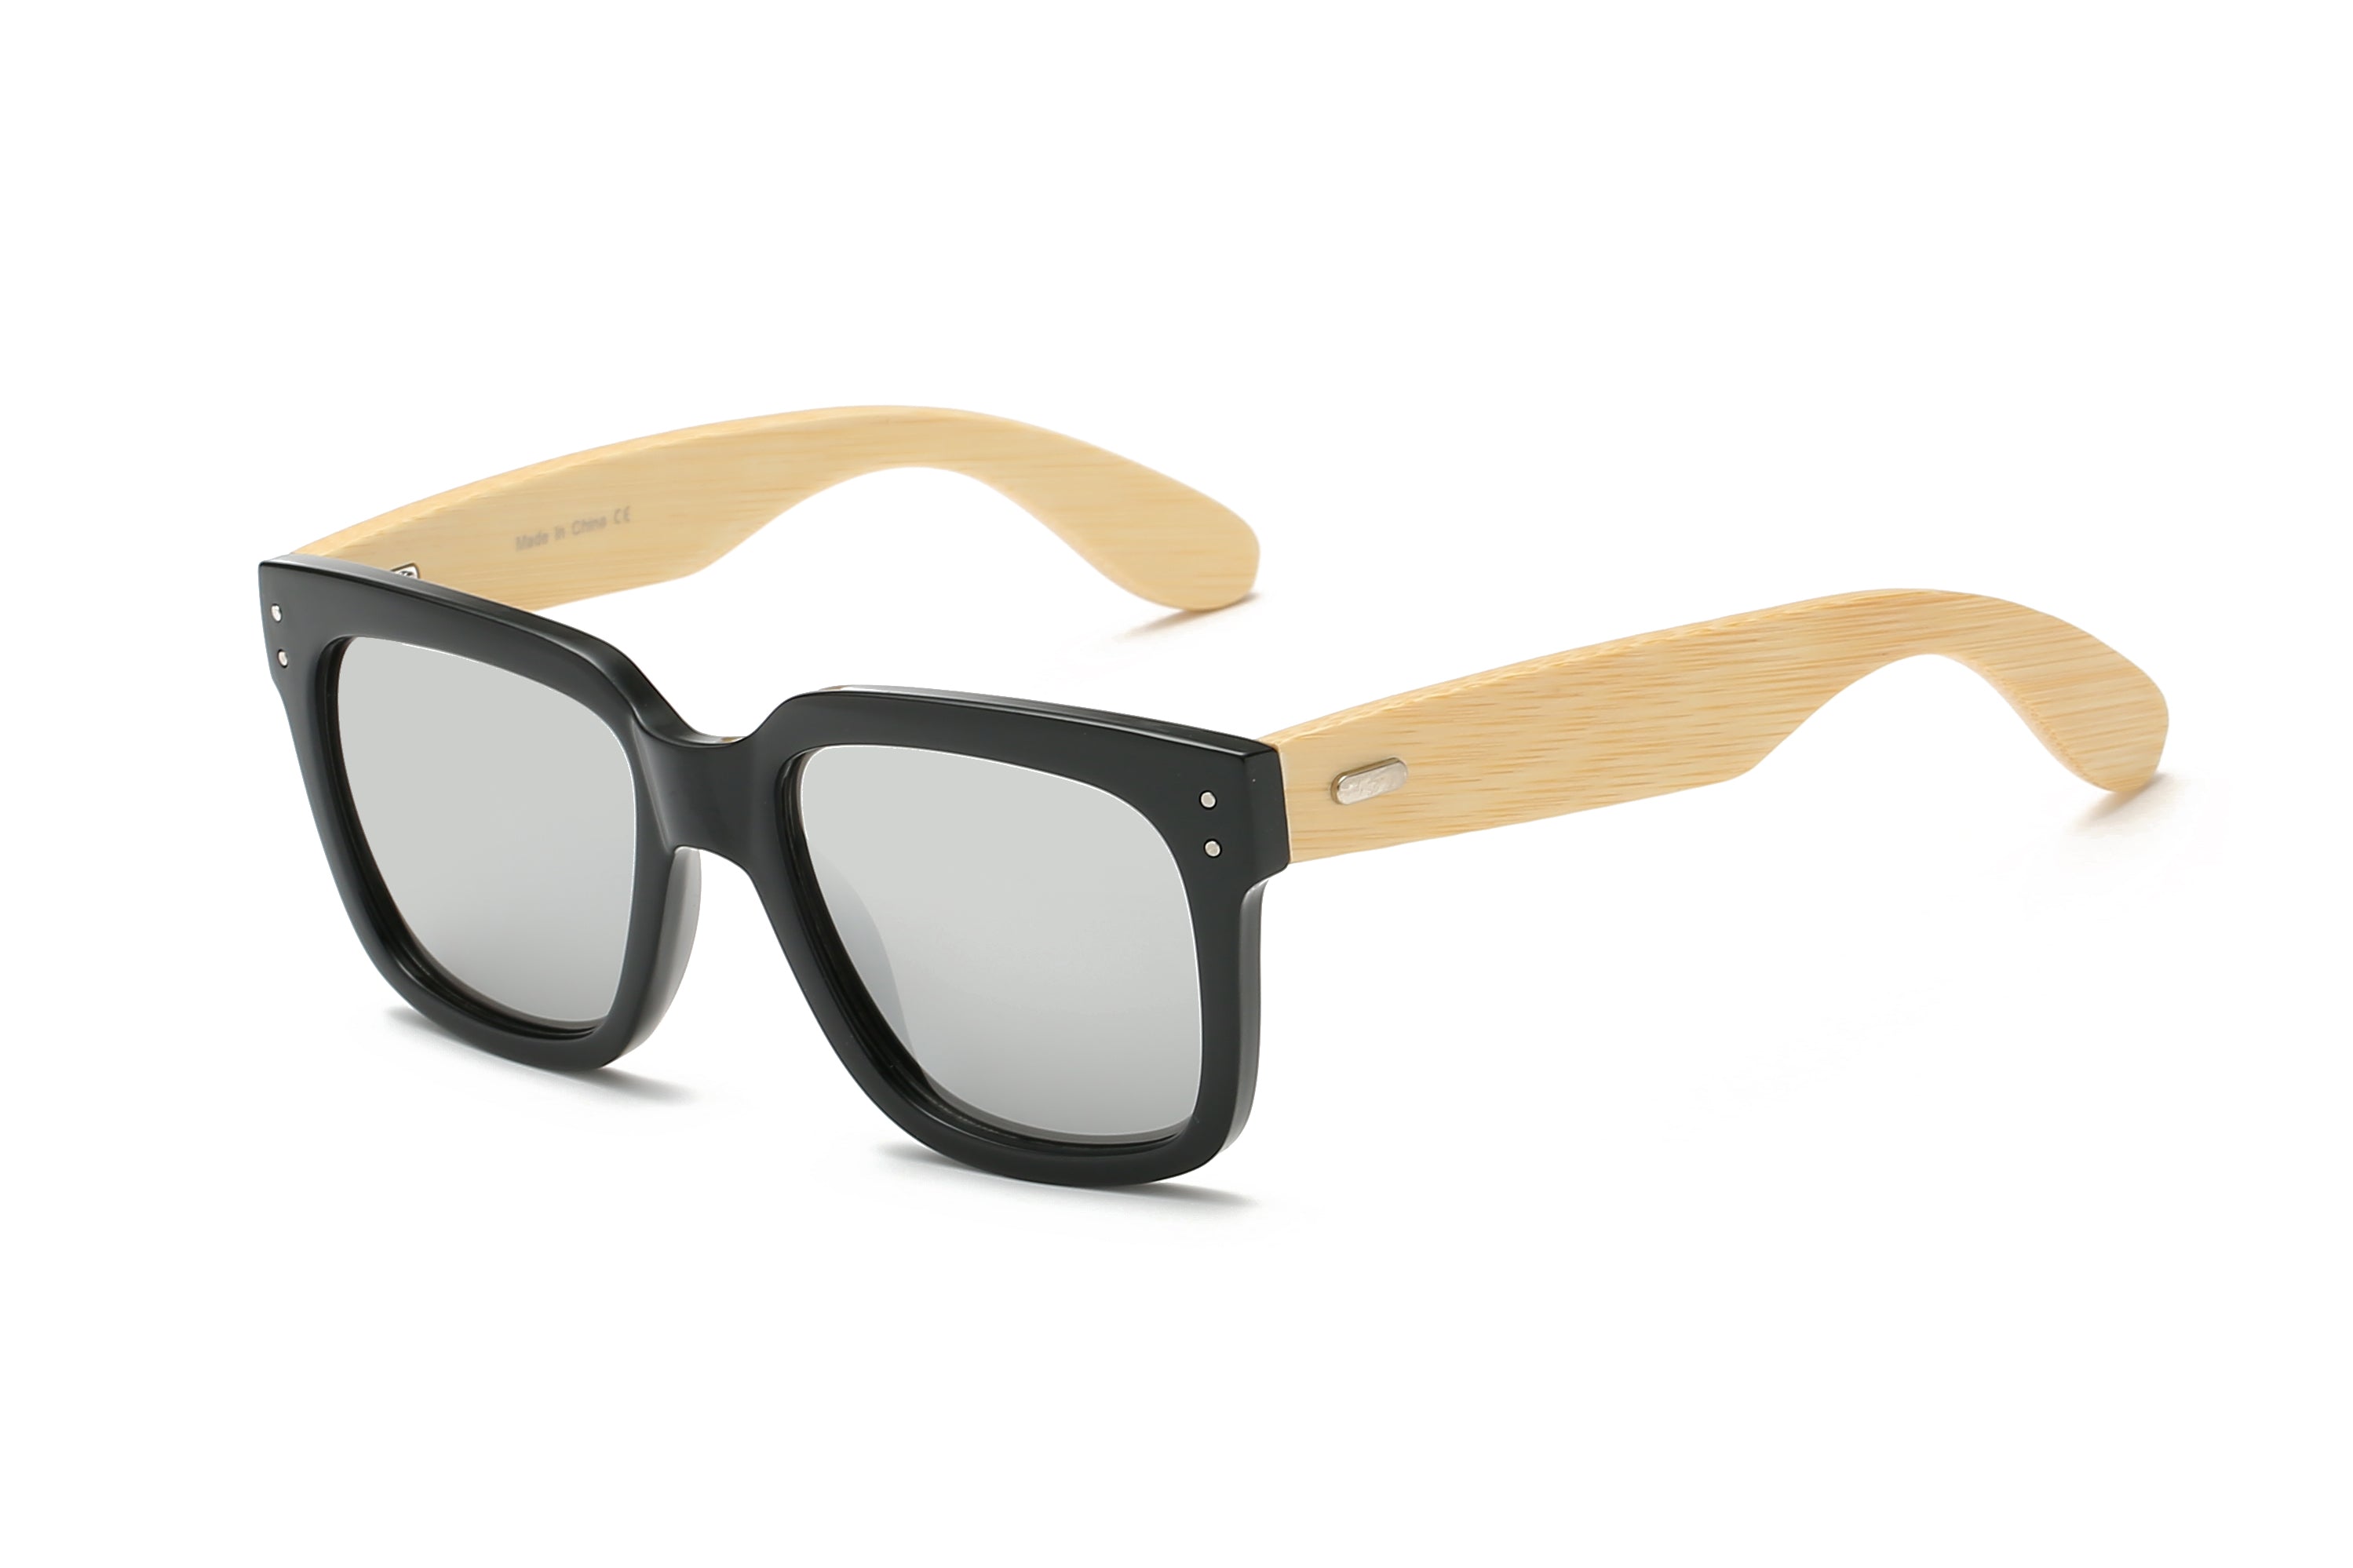 S3005 - Retro Square Fashion Sunglasses Grey